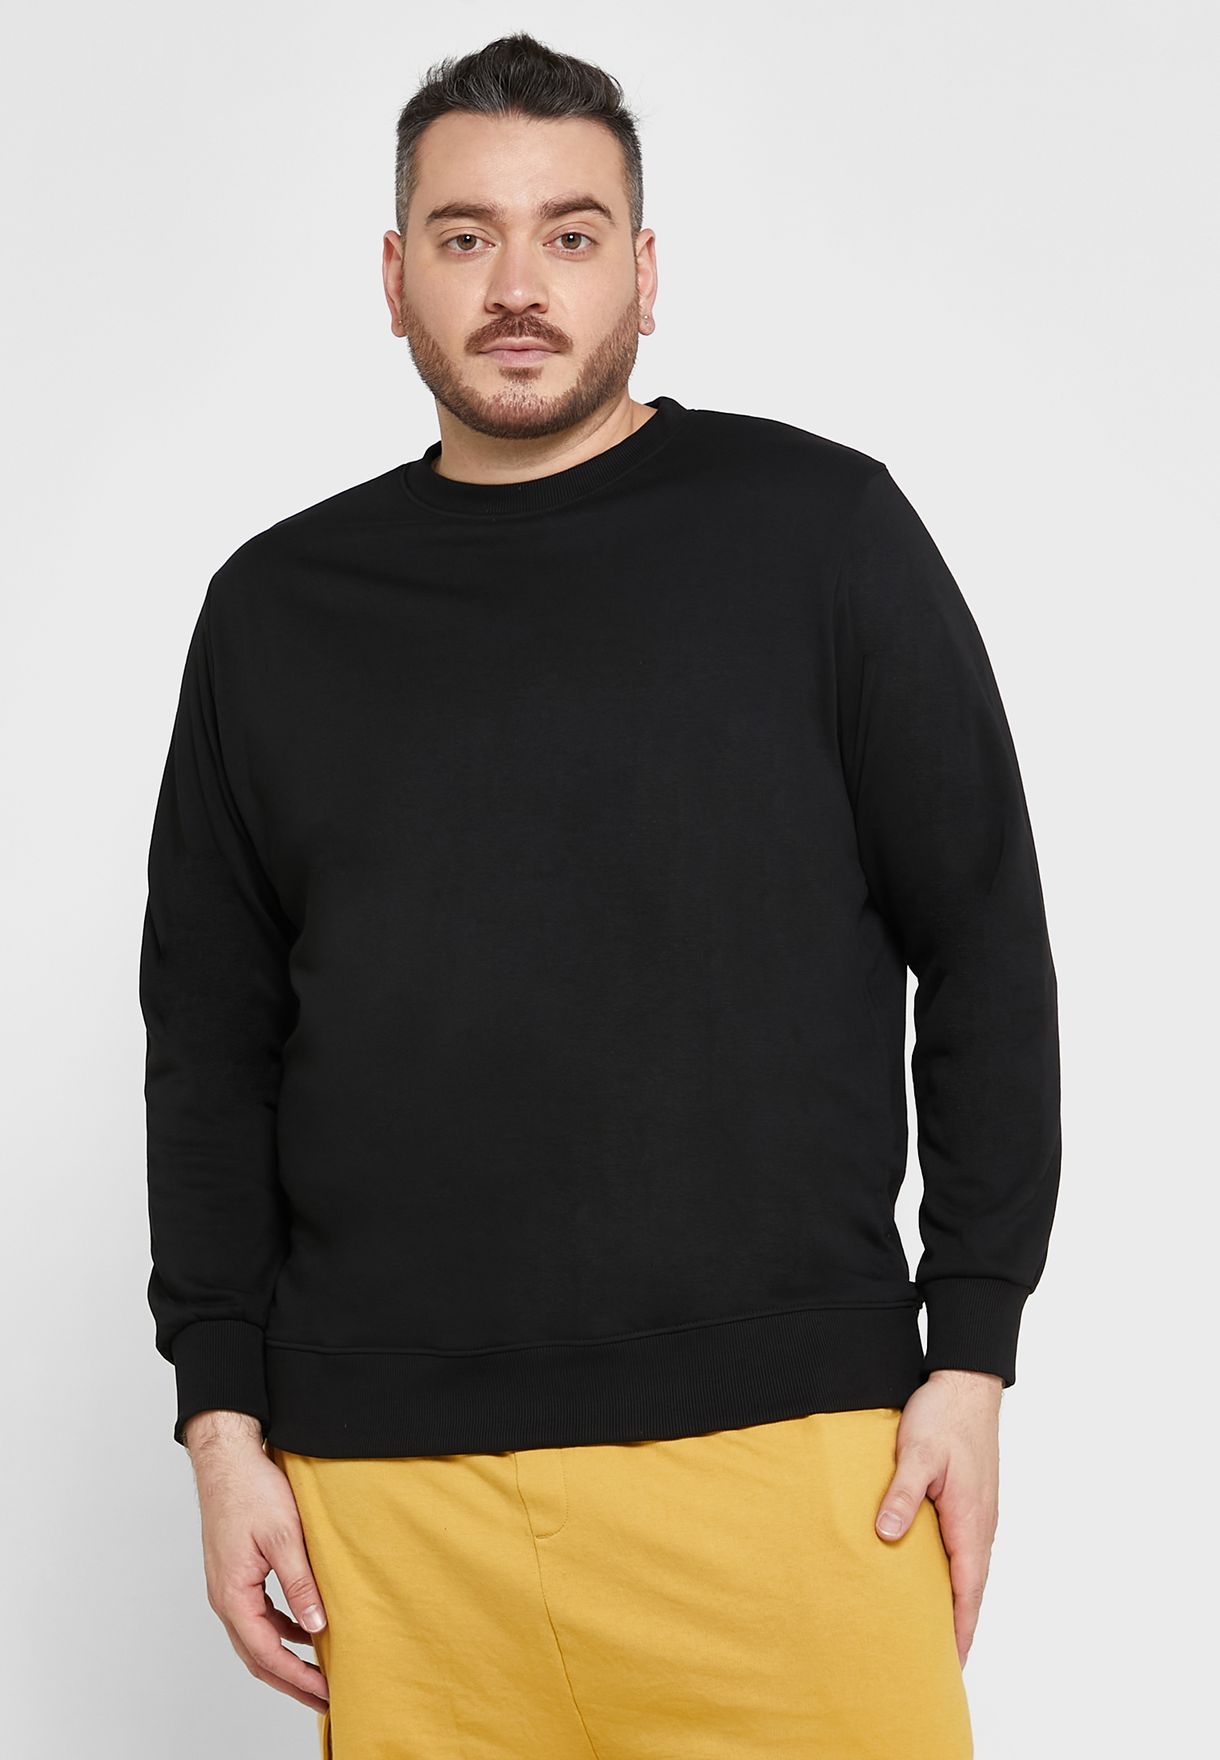 Plus Size Sweatshirt